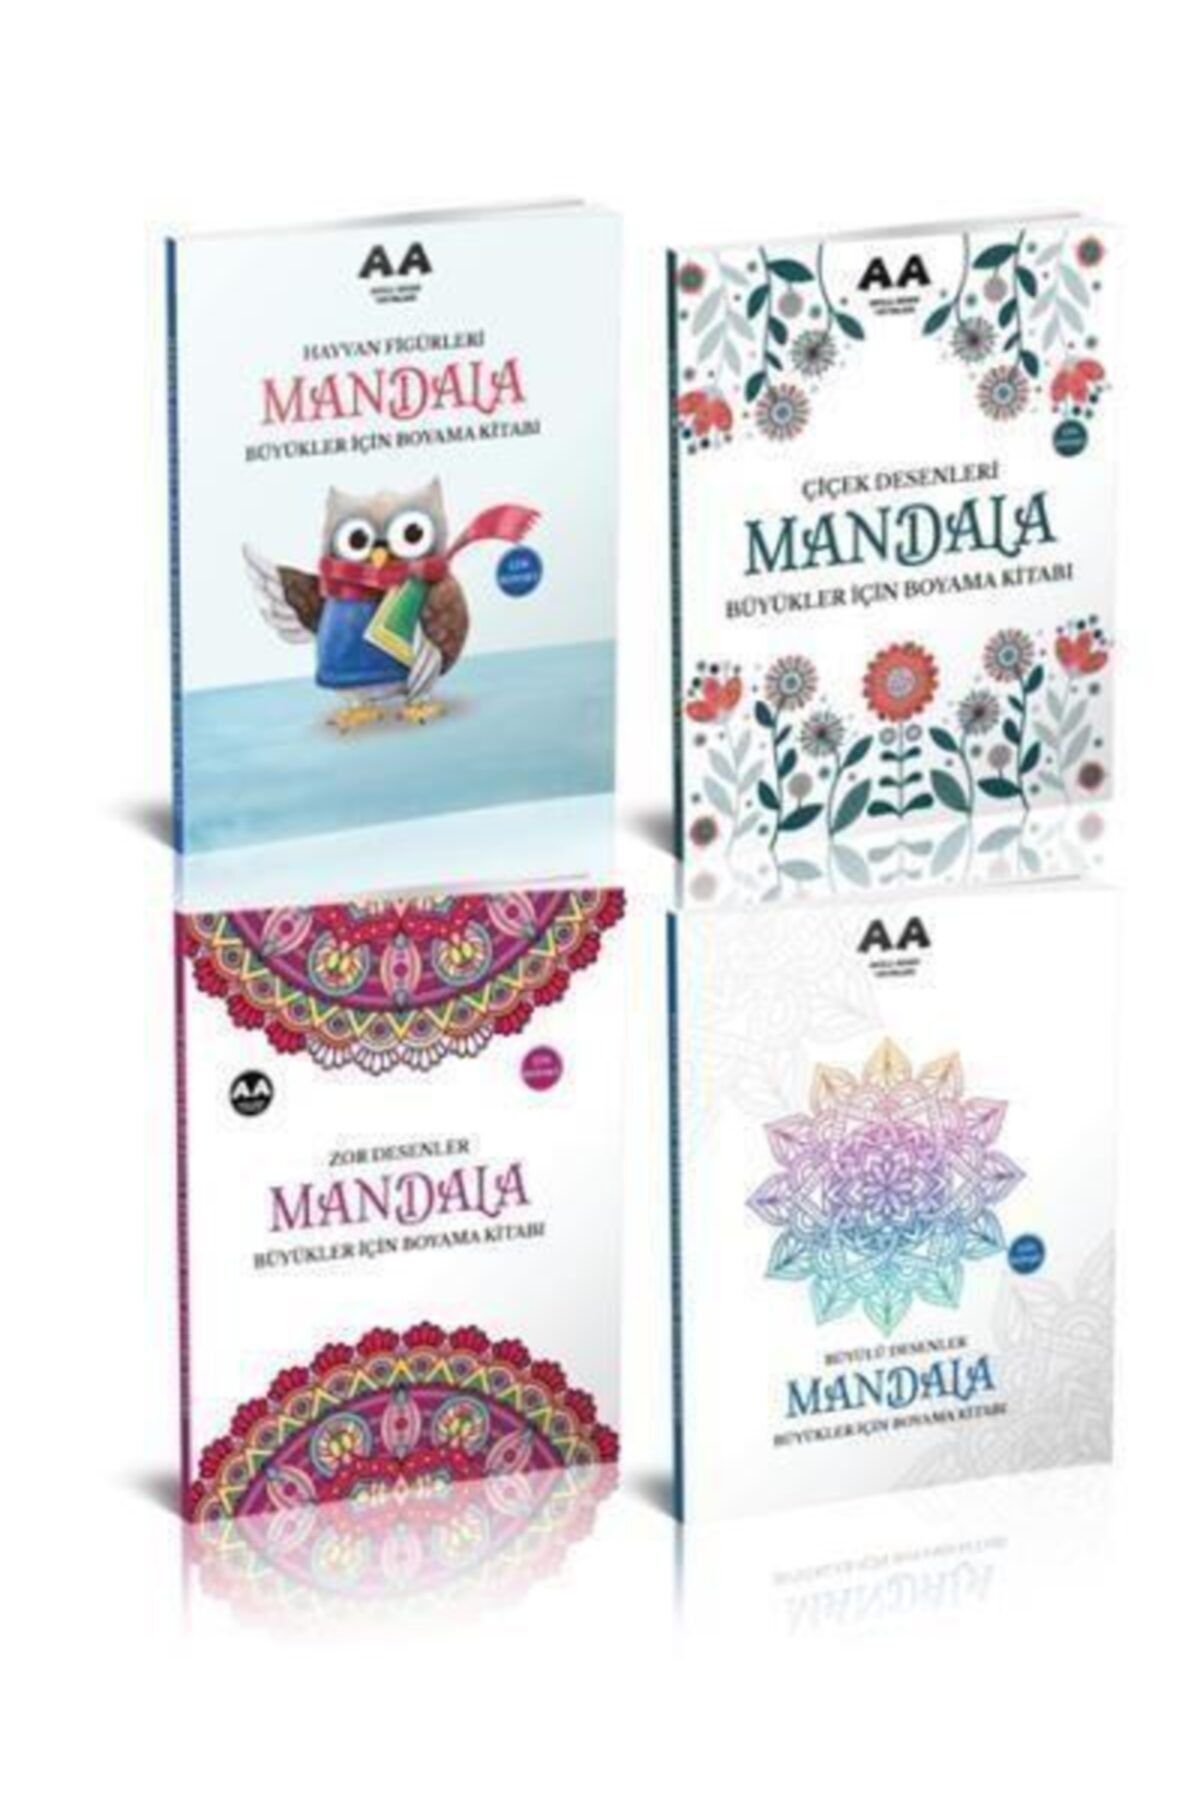 Genel Markalar Yetişkinler Için Mandala Boyama Seti 2 (4 Kitap)